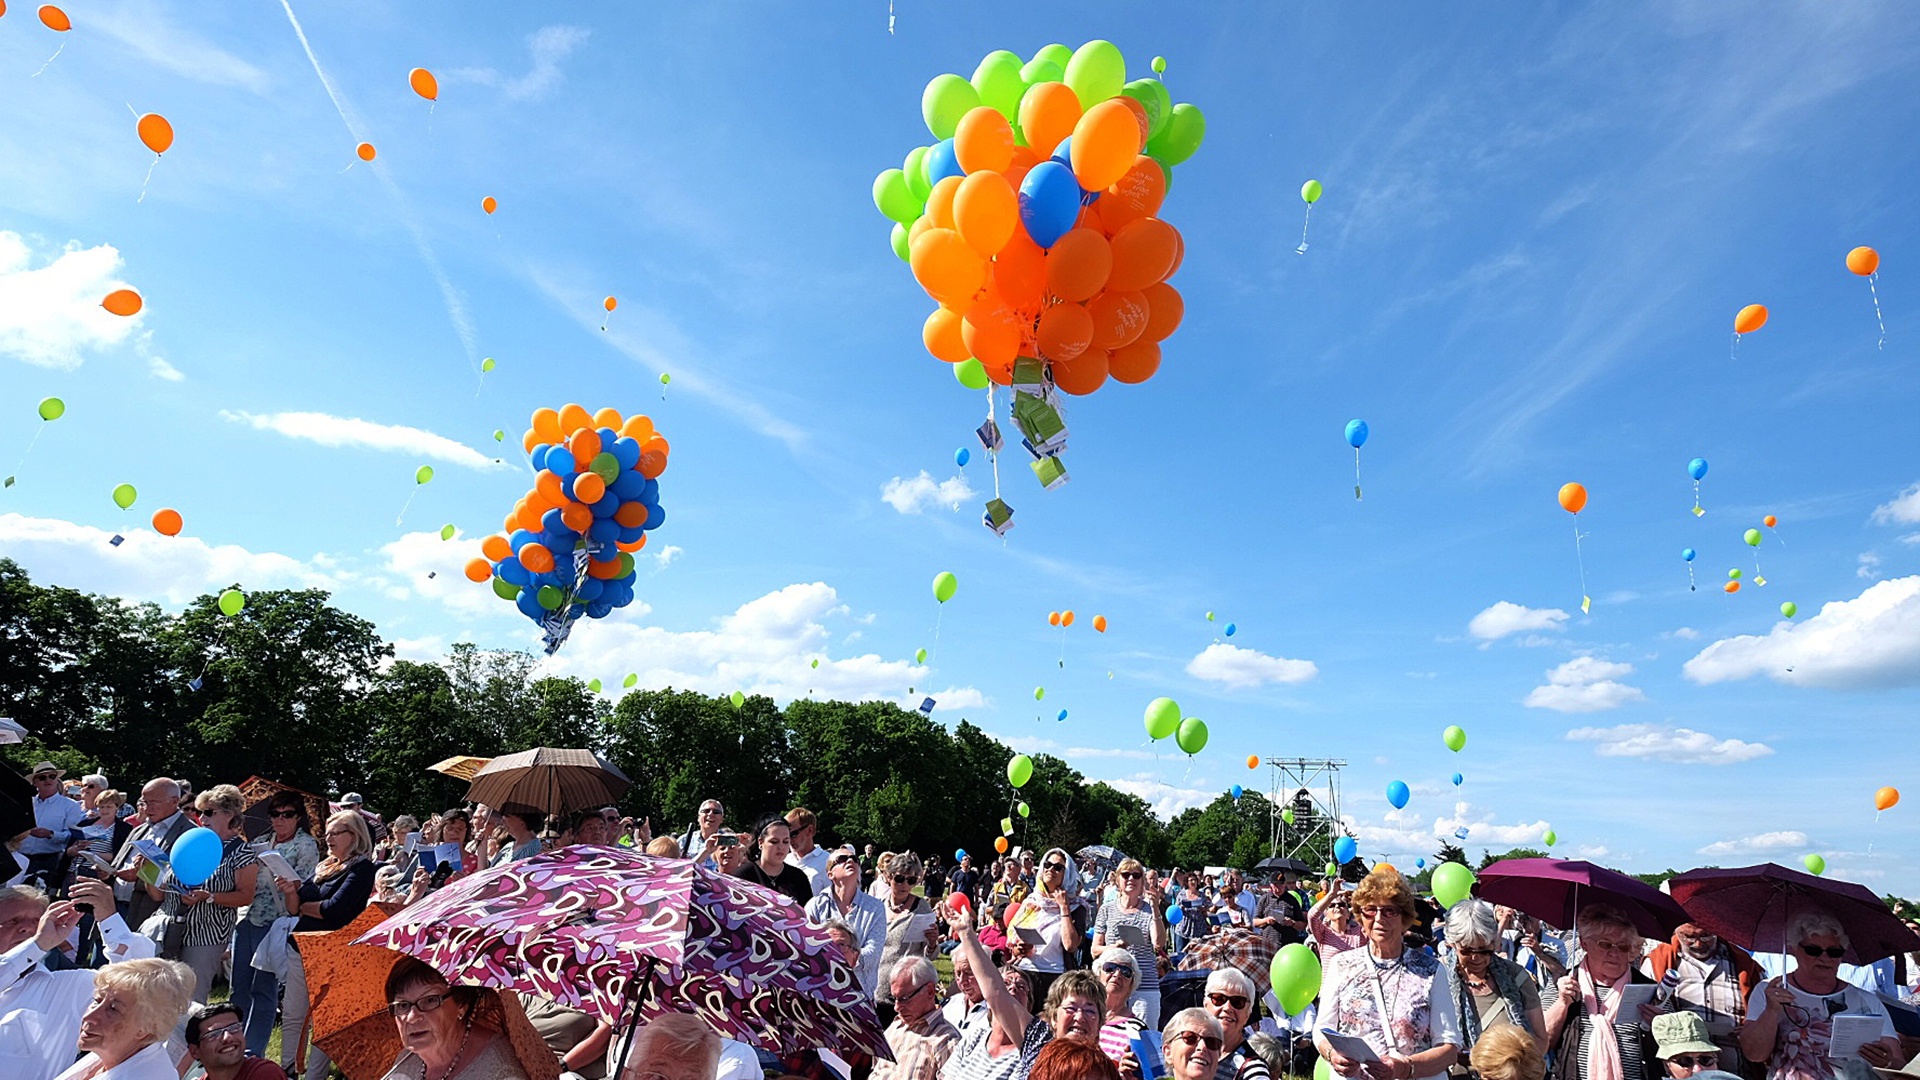 eintausend Luftballons steigen beim ökumenischen Christusfest in den Himmel